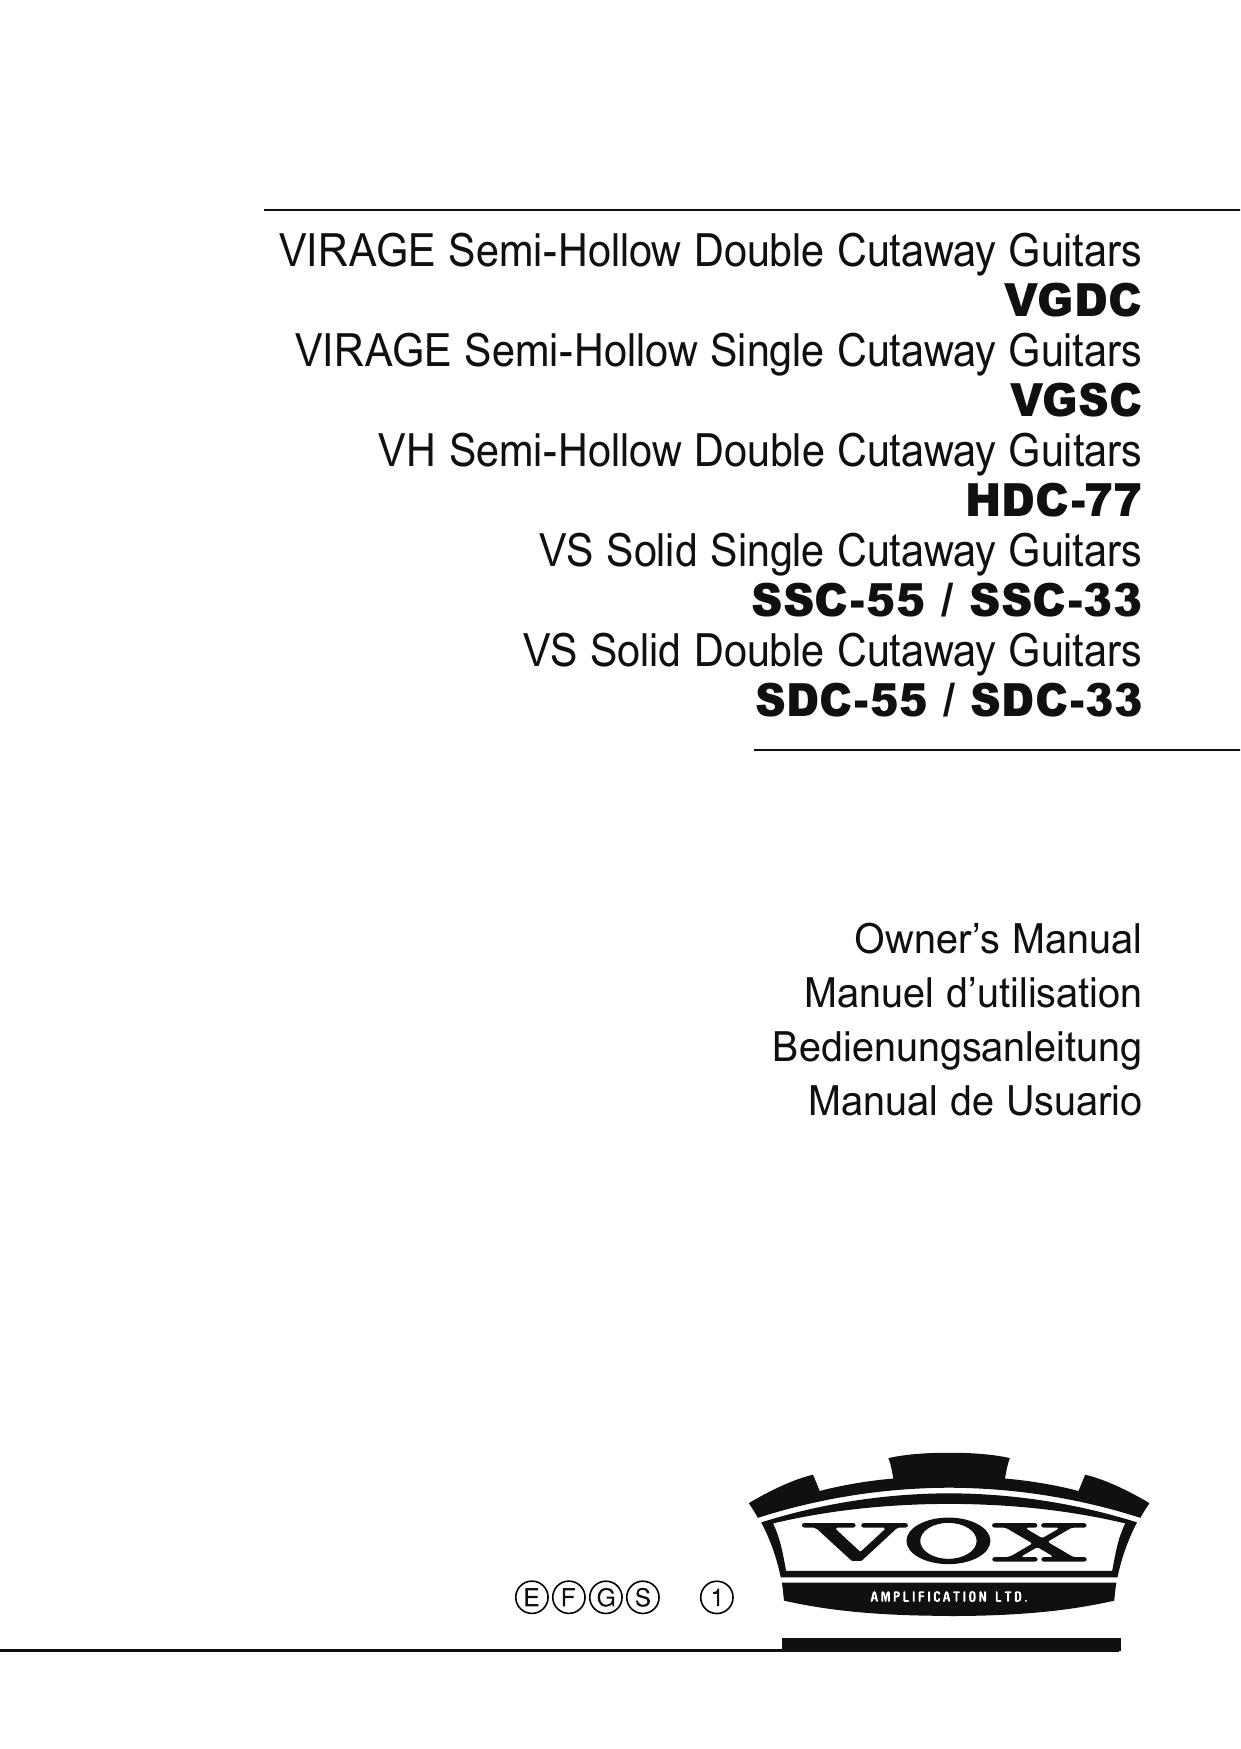 Vox HDC-77 Guitar User Manual